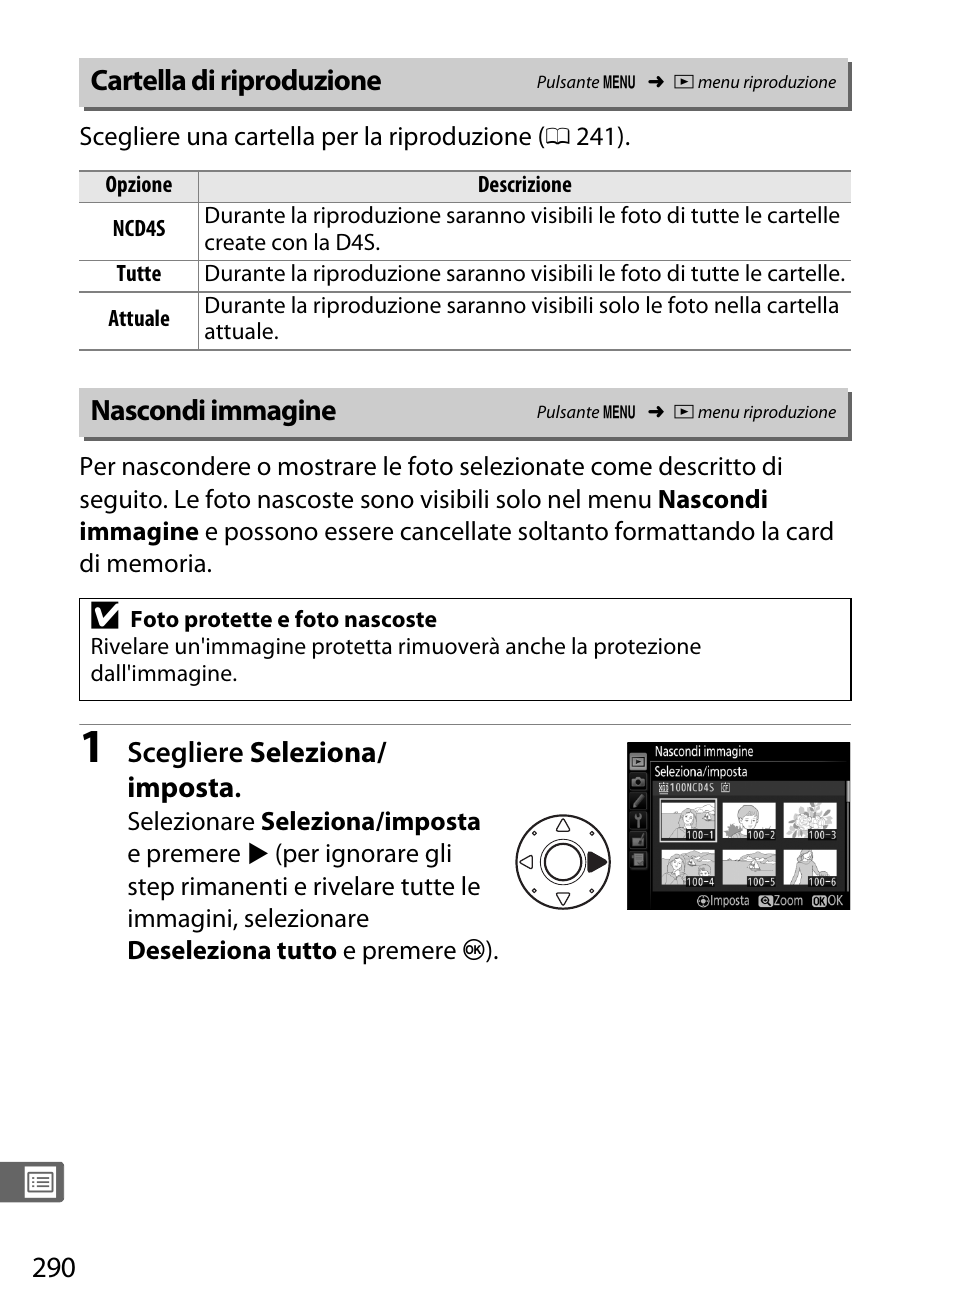 Cartella di riproduzione, Nascondi immagine, Scegliere seleziona/ imposta | Nikon D4S Manuale d'uso | Pagina 312 / 500